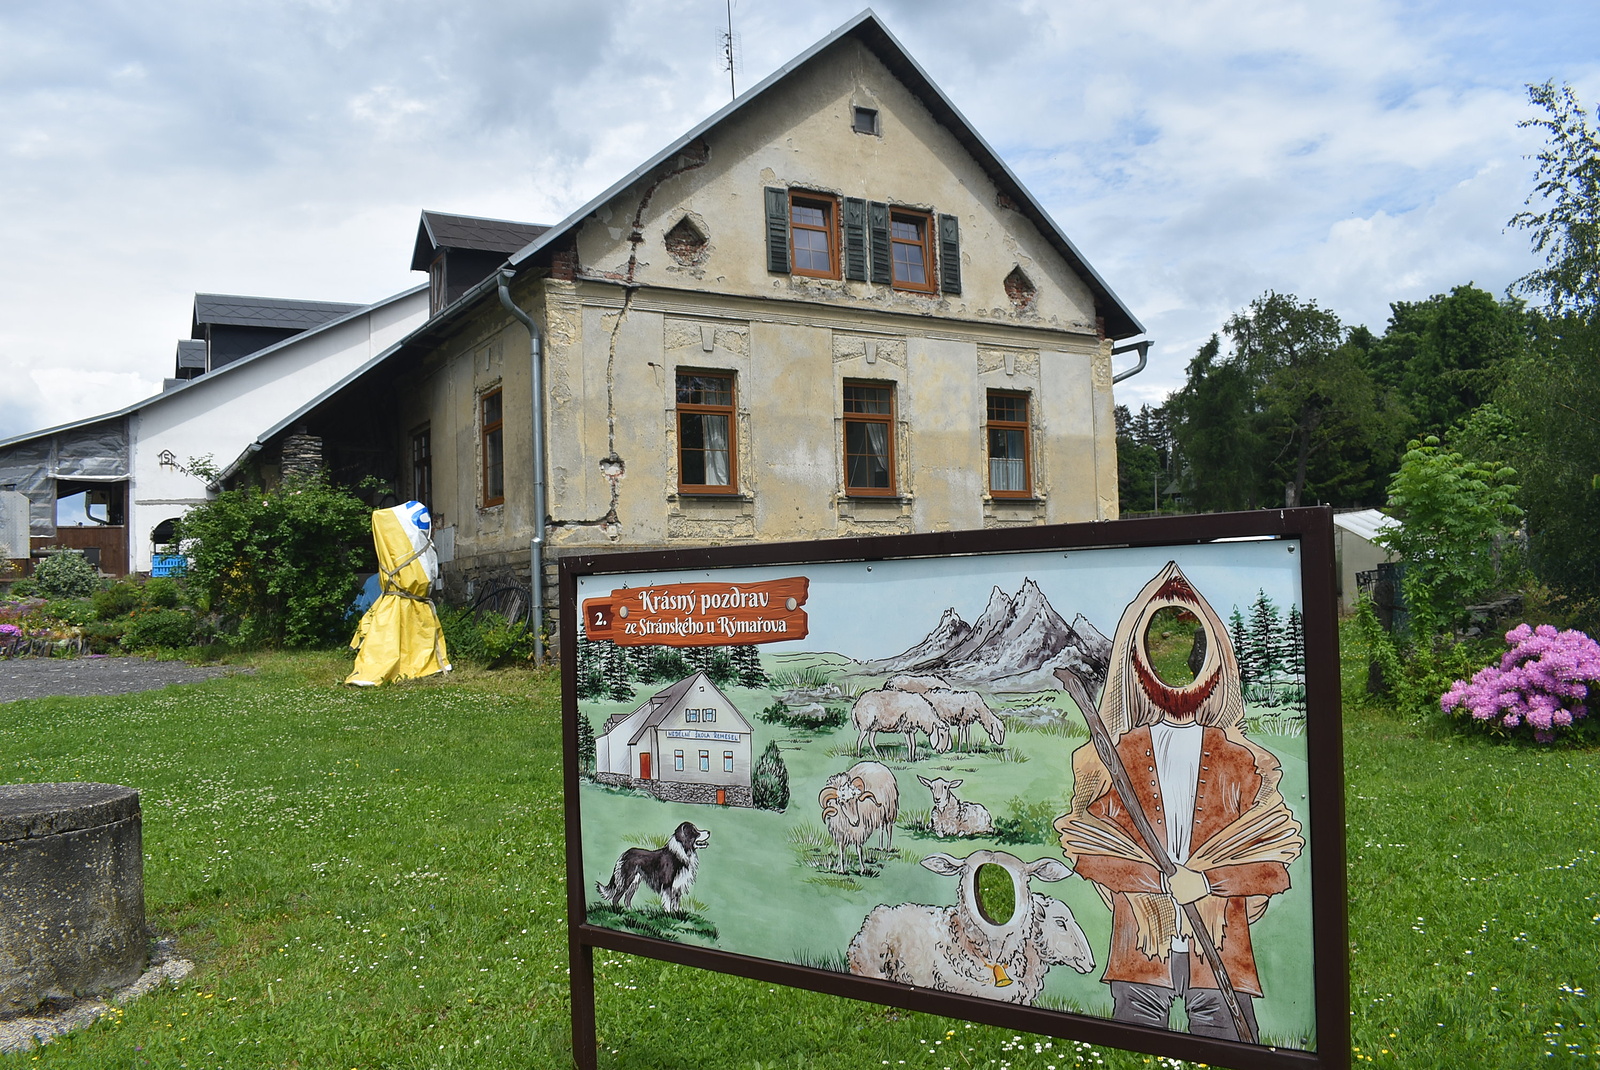 Technoparty v panenské přírodě, jak to vidí místní ve Stránském na  Bruntálsku - Moravskoslezský deník